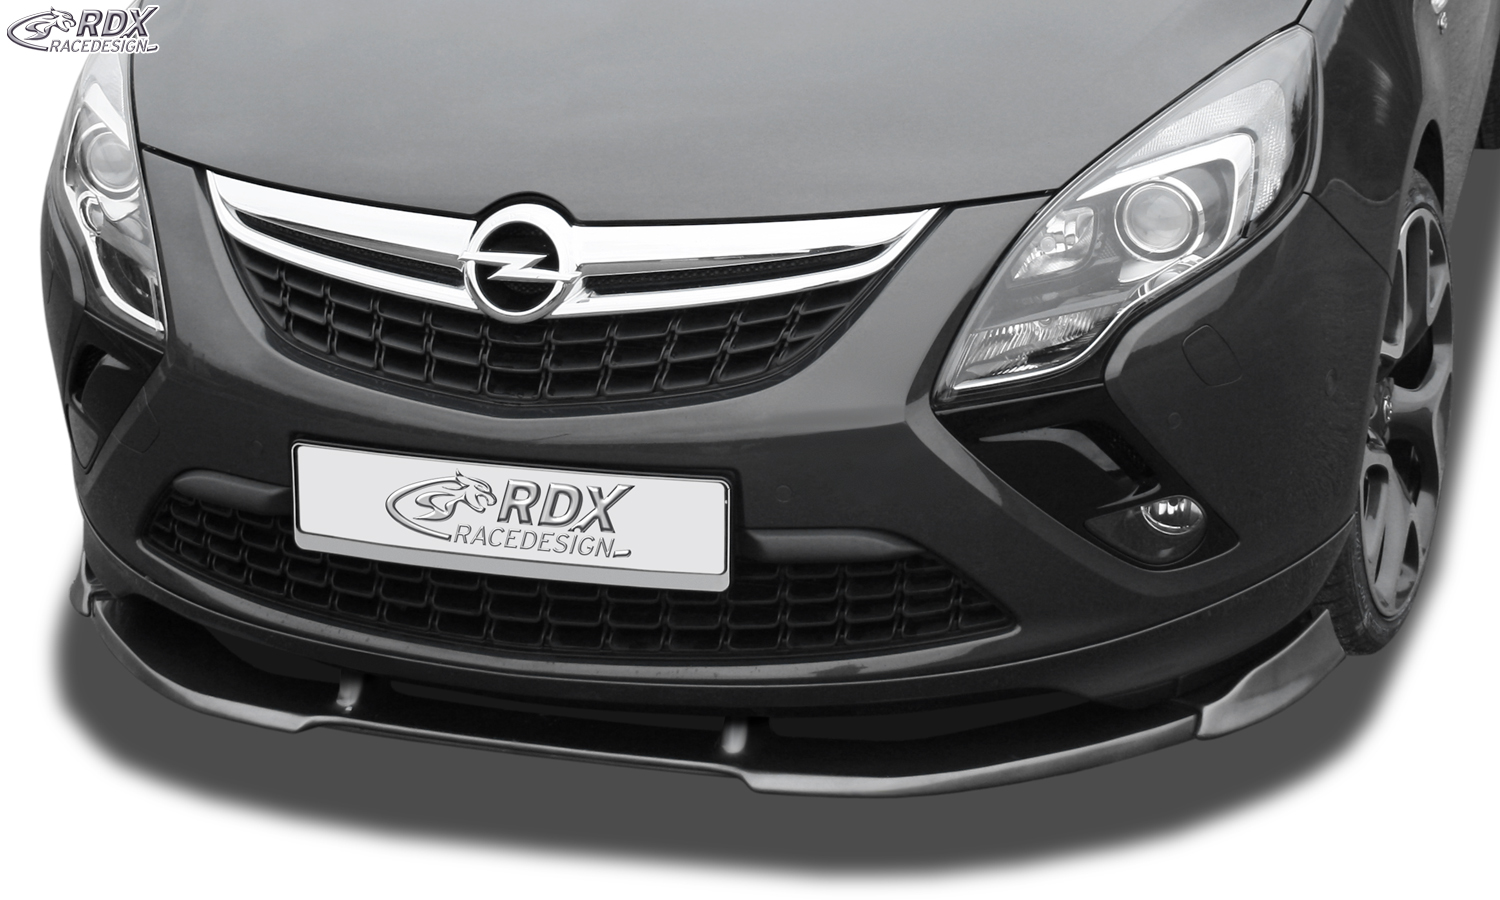 RDX Front Spoiler VARIO-X for OPEL Zafira Tourer 2011+ OPC-Line Front Lip Splitter